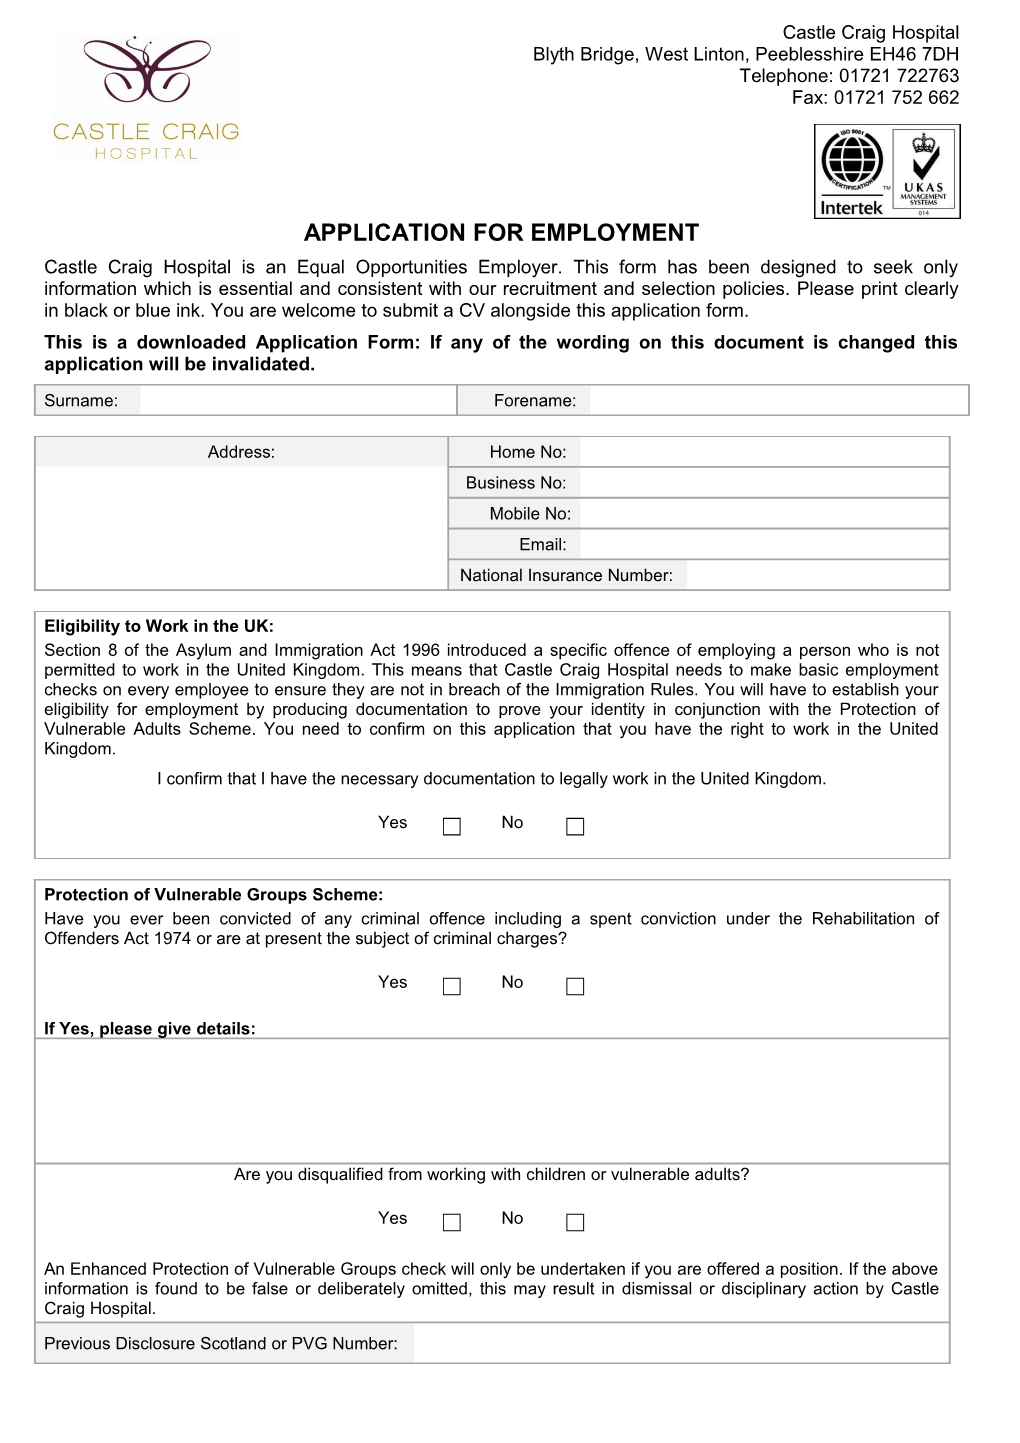 Castle Craig Application Form